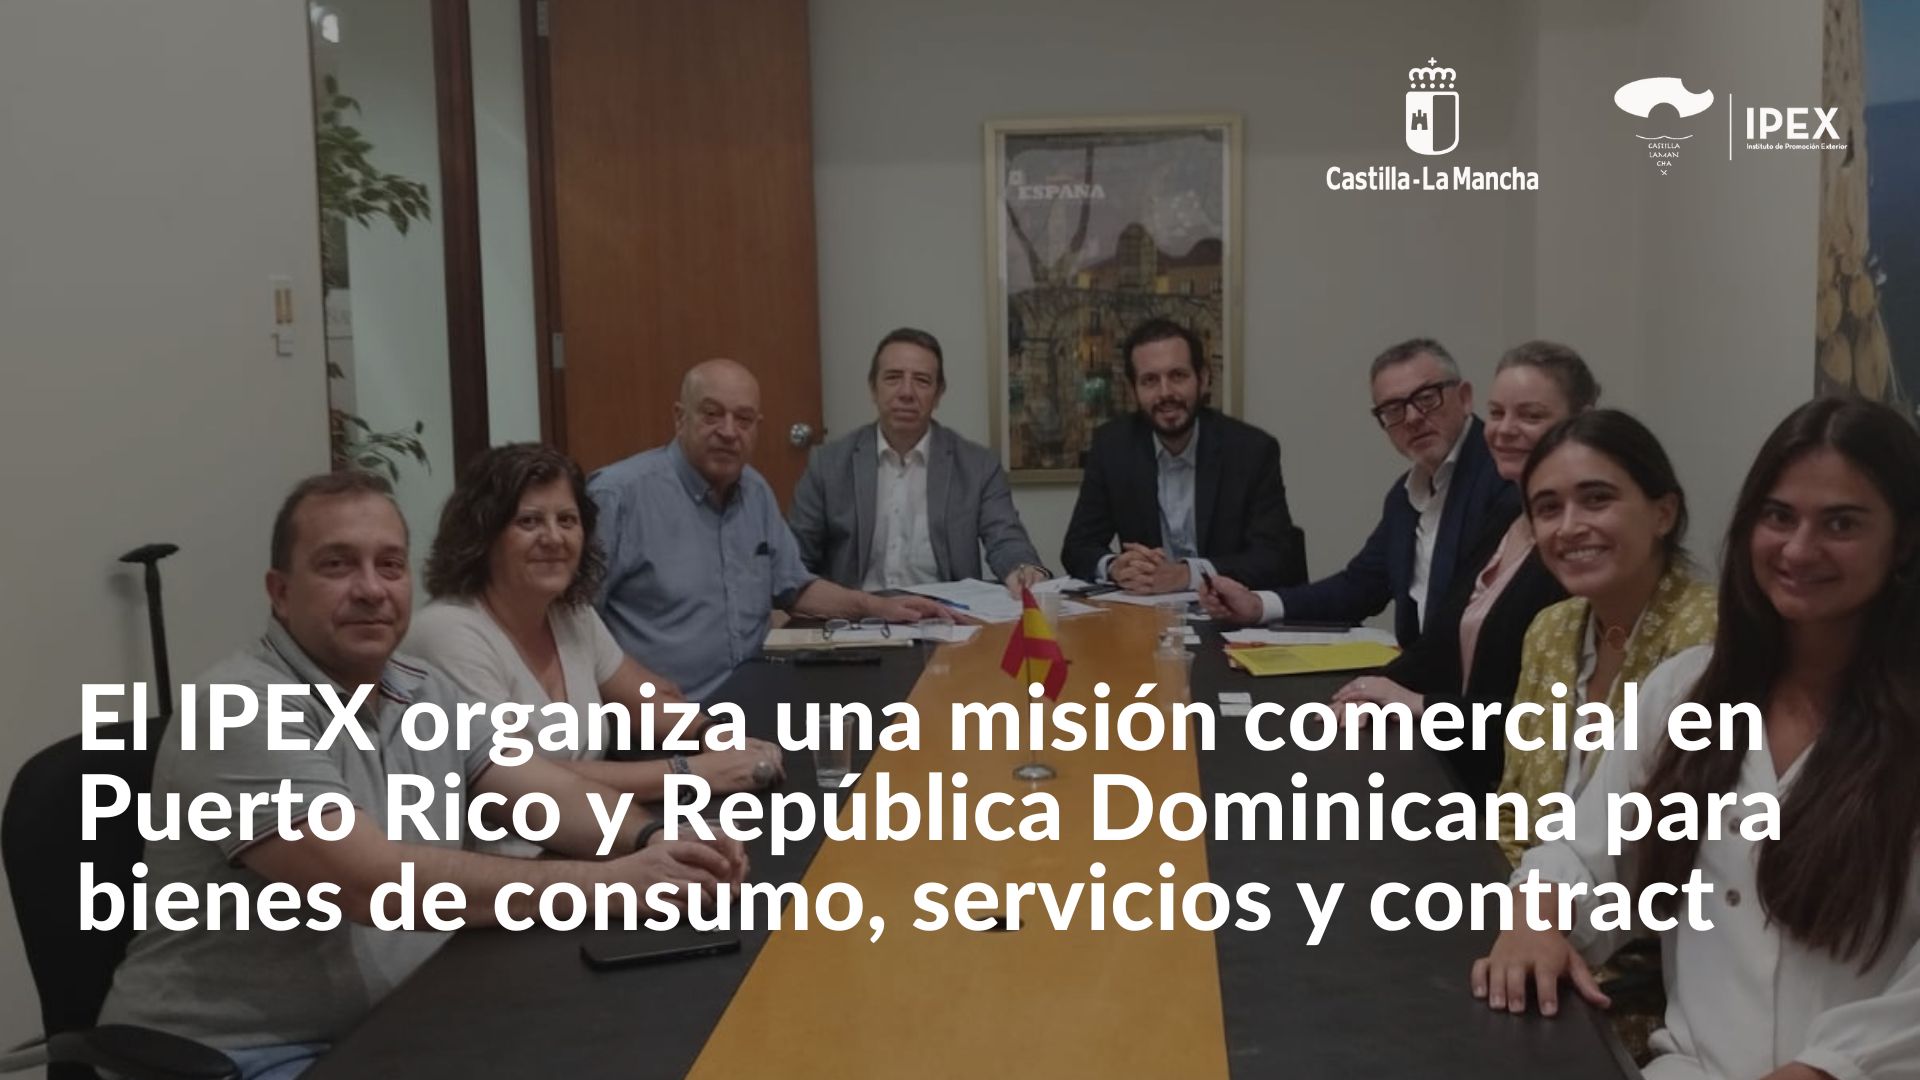 El IPEX organiza una misión comercial en Puerto Rico y República Dominicana para bienes de consumo, servicios y contract